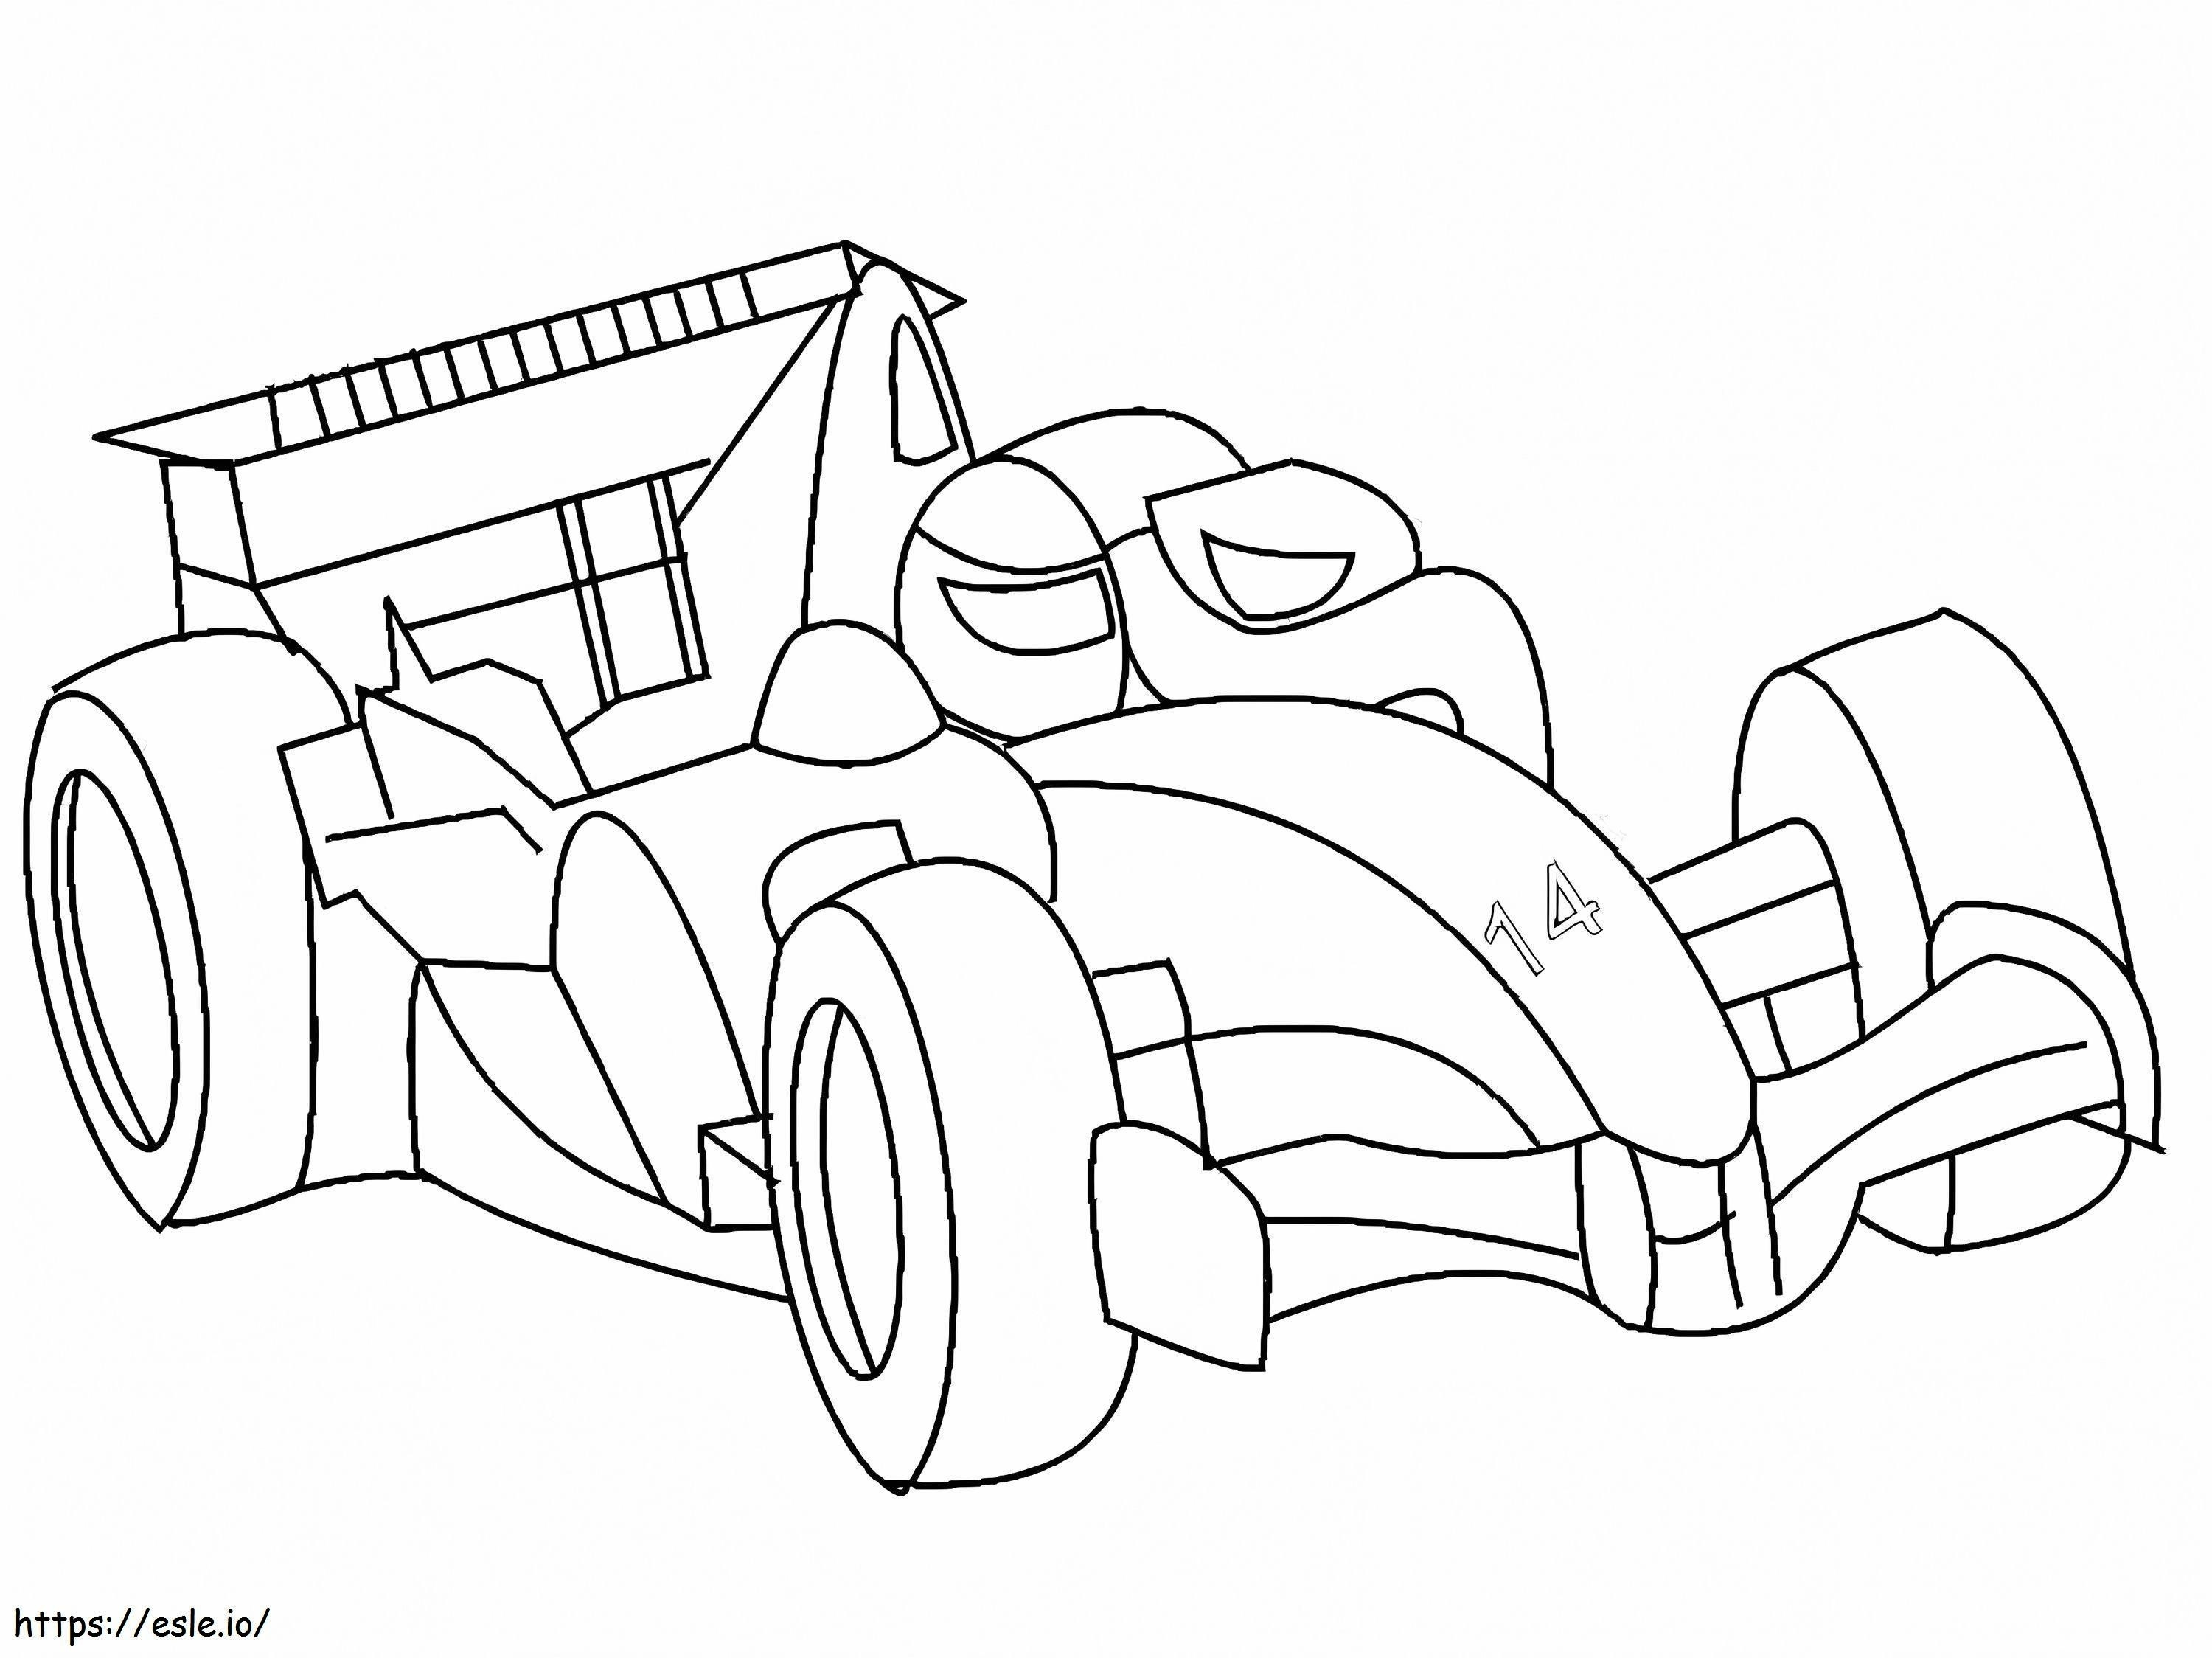 Formula 1 Racing Car 1 coloring page